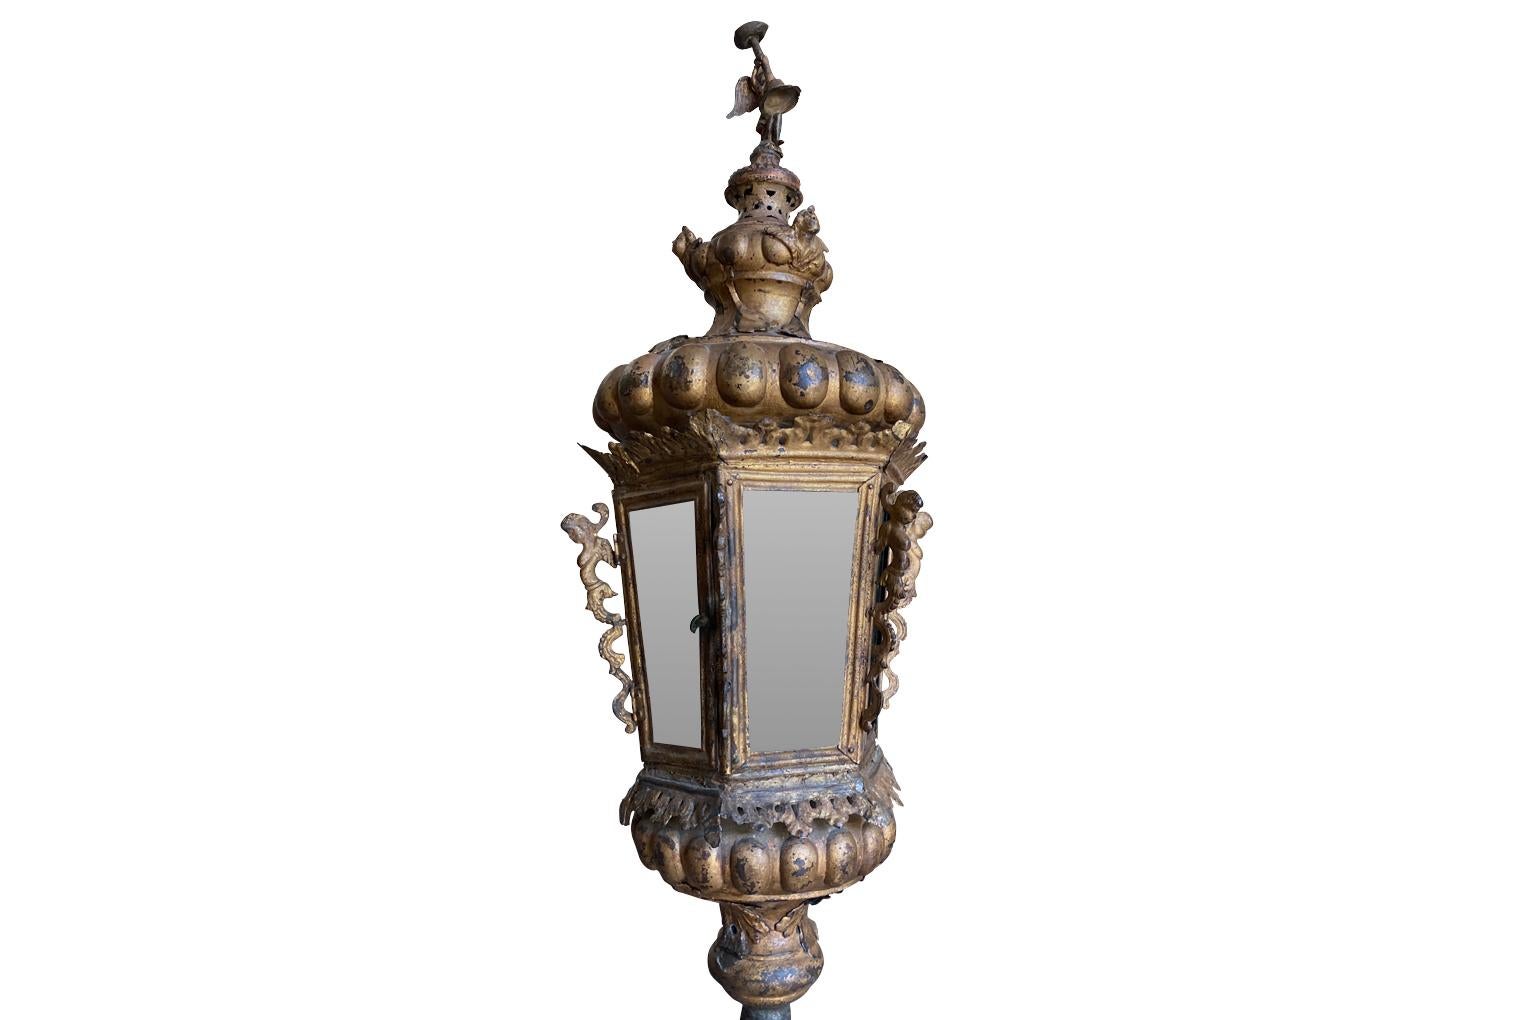 Eine sehr beeindruckende Laterne aus dem 18. Jahrhundert aus Venedig. Wunderschön aus vergoldetem Metall gefertigt und mit einem Engel und Putten verziert, die auf einem Steinsockel stehen. Großer Maßstab und bereit für die Verwendung mit Kerzen